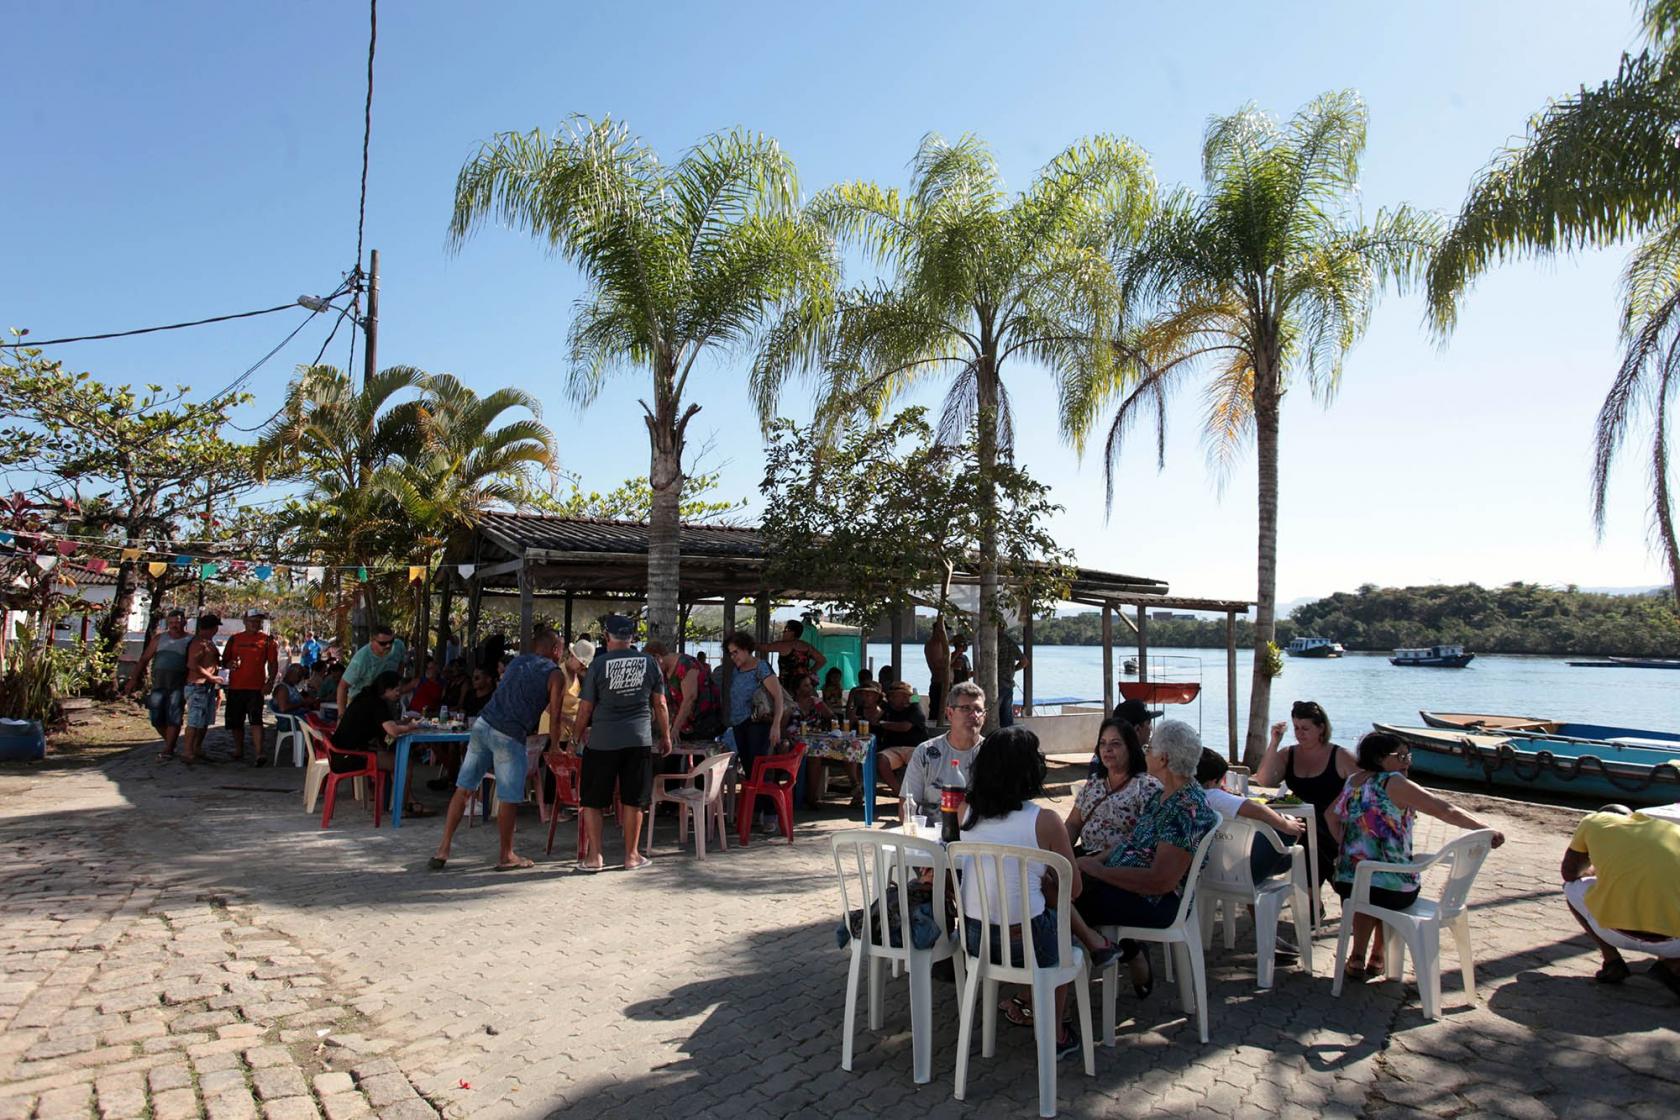 Cerca de 50 pessoas em pé e sentadas junto a mesas comem e bebem em área aberta com palmeiras junto ao mar #pracegover